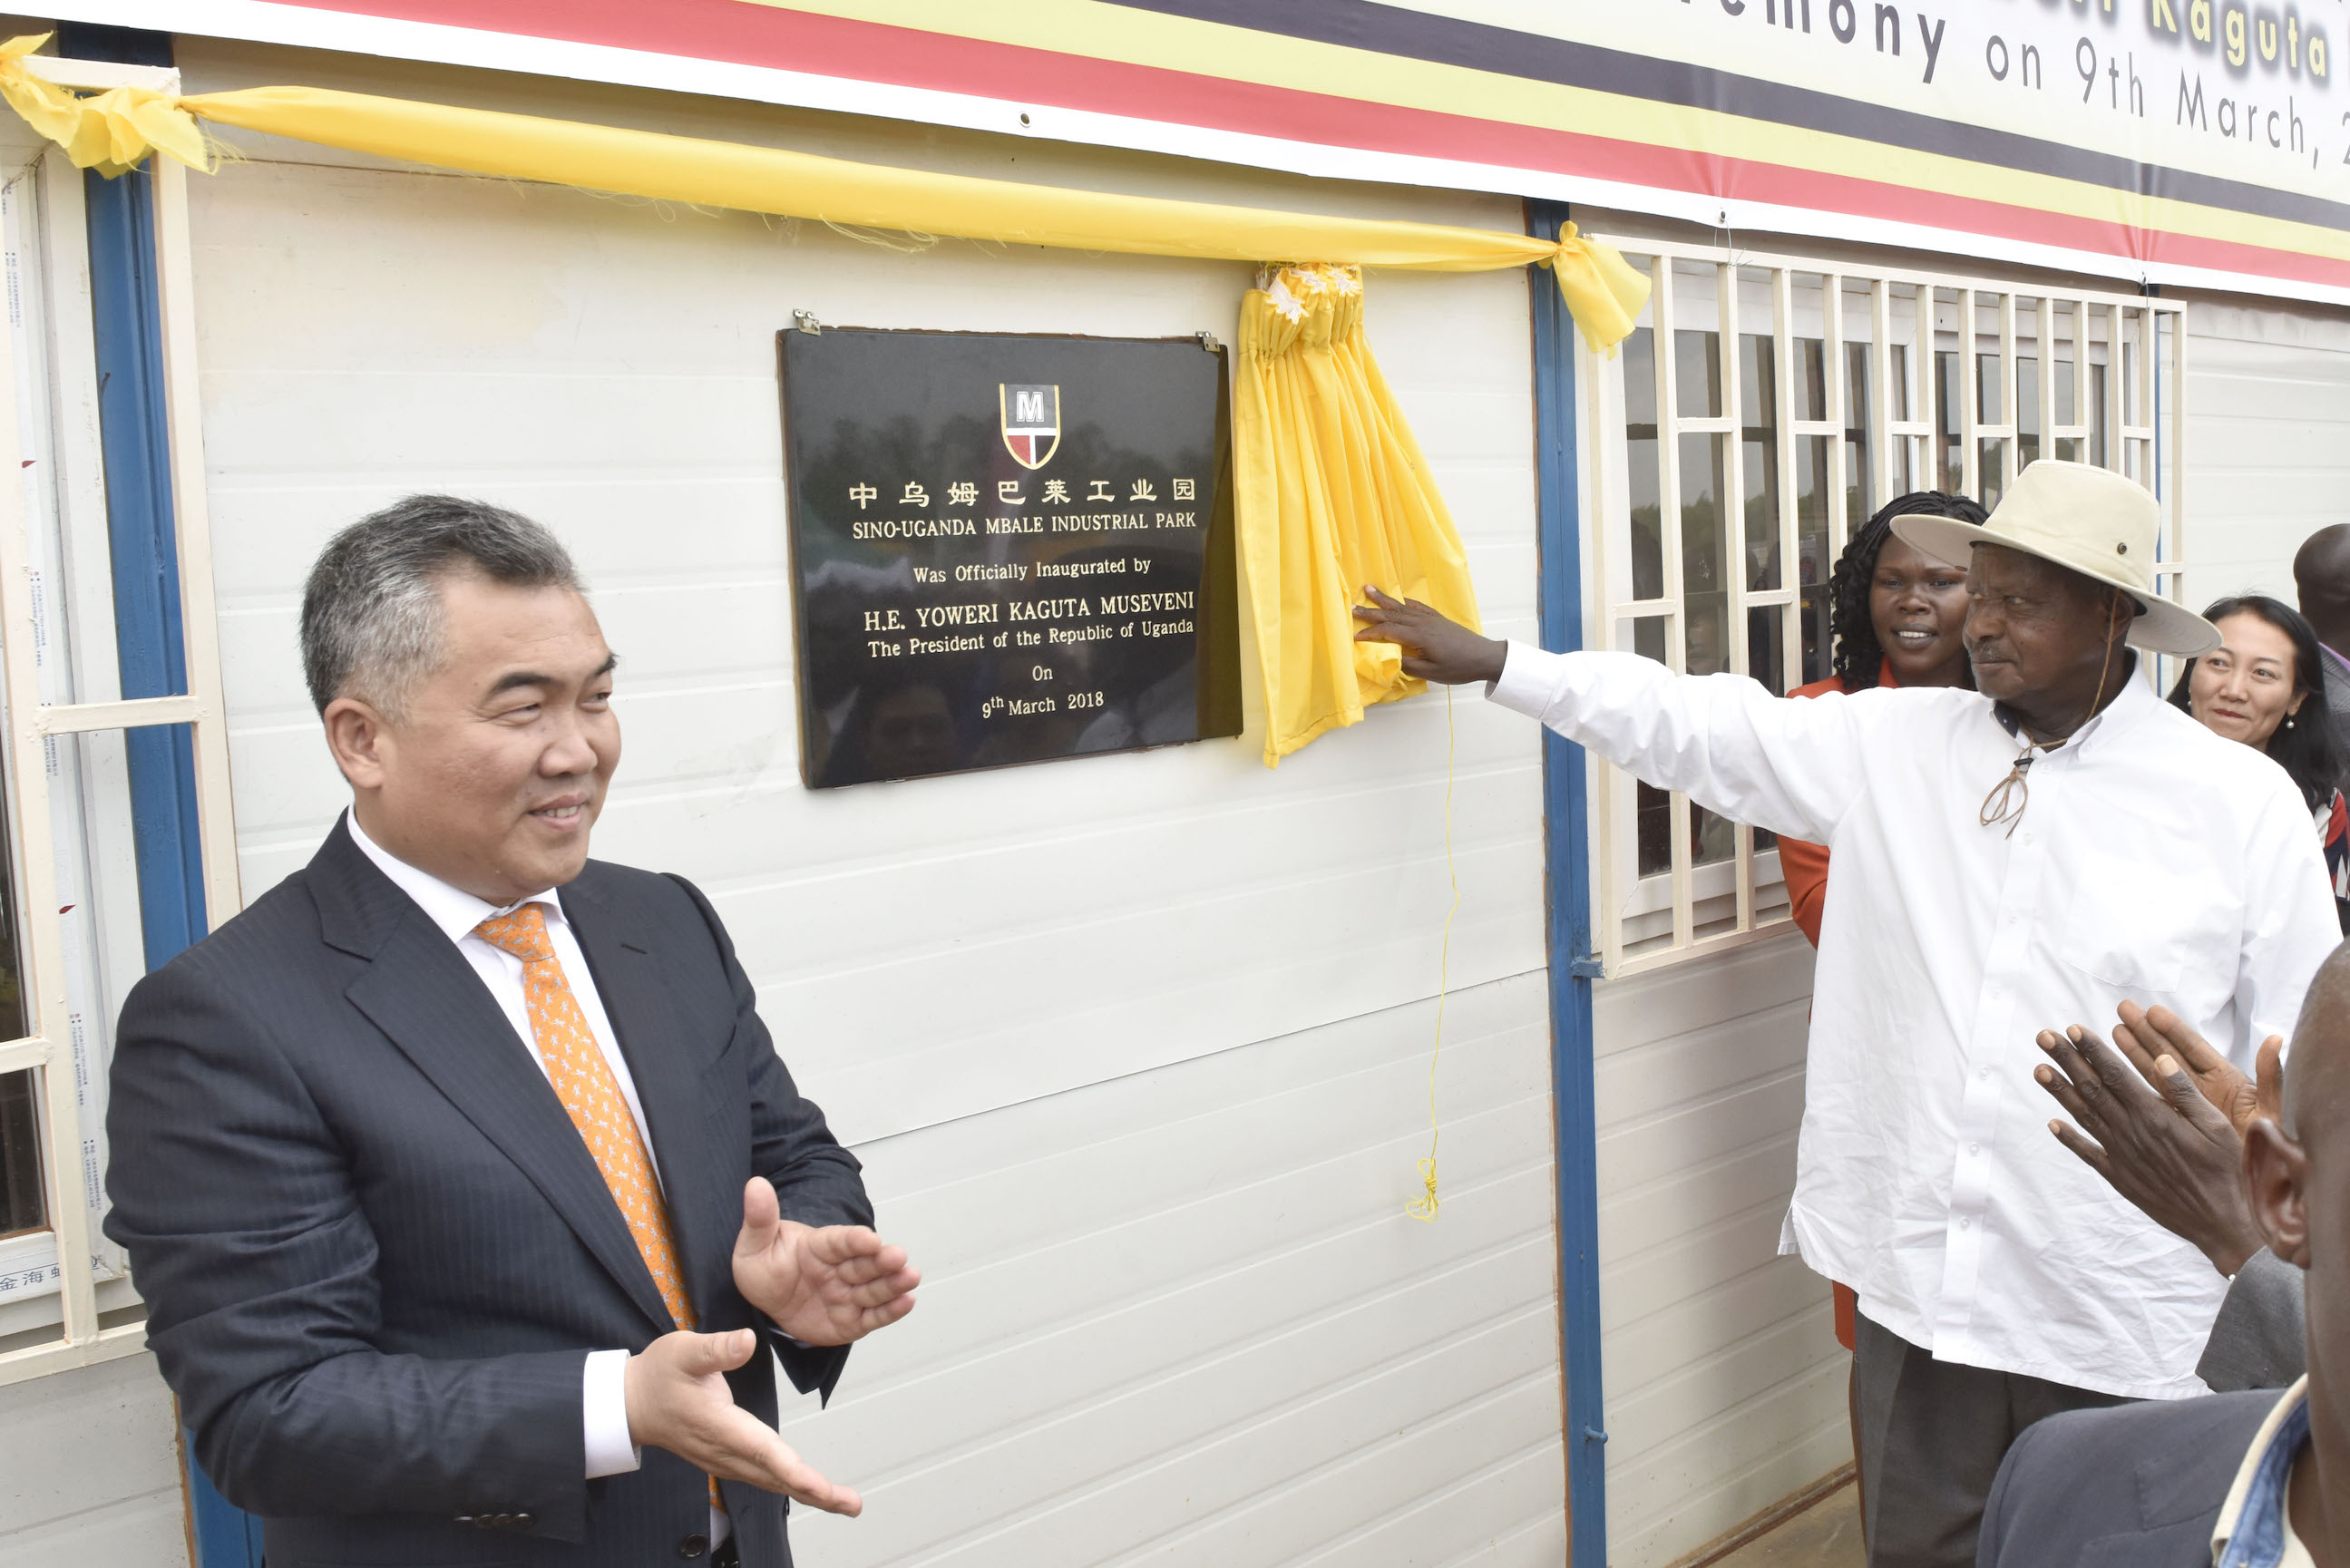 2018年3月乌干达总统穆塞维尼参加中乌姆巴莱工业园奠基仪式并为园区揭牌